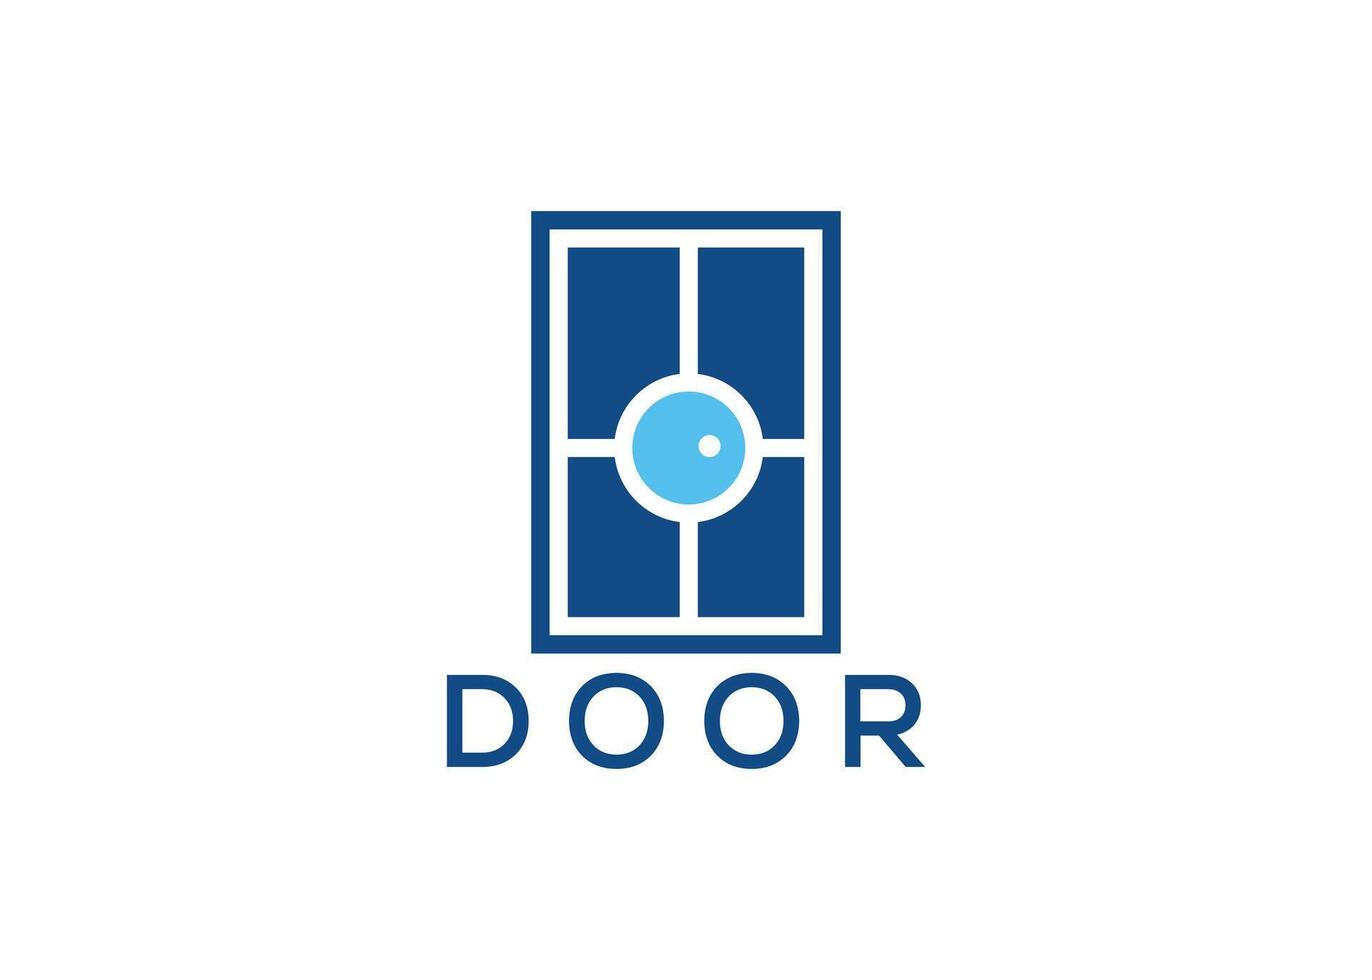 Creative and minimal door logo template vector